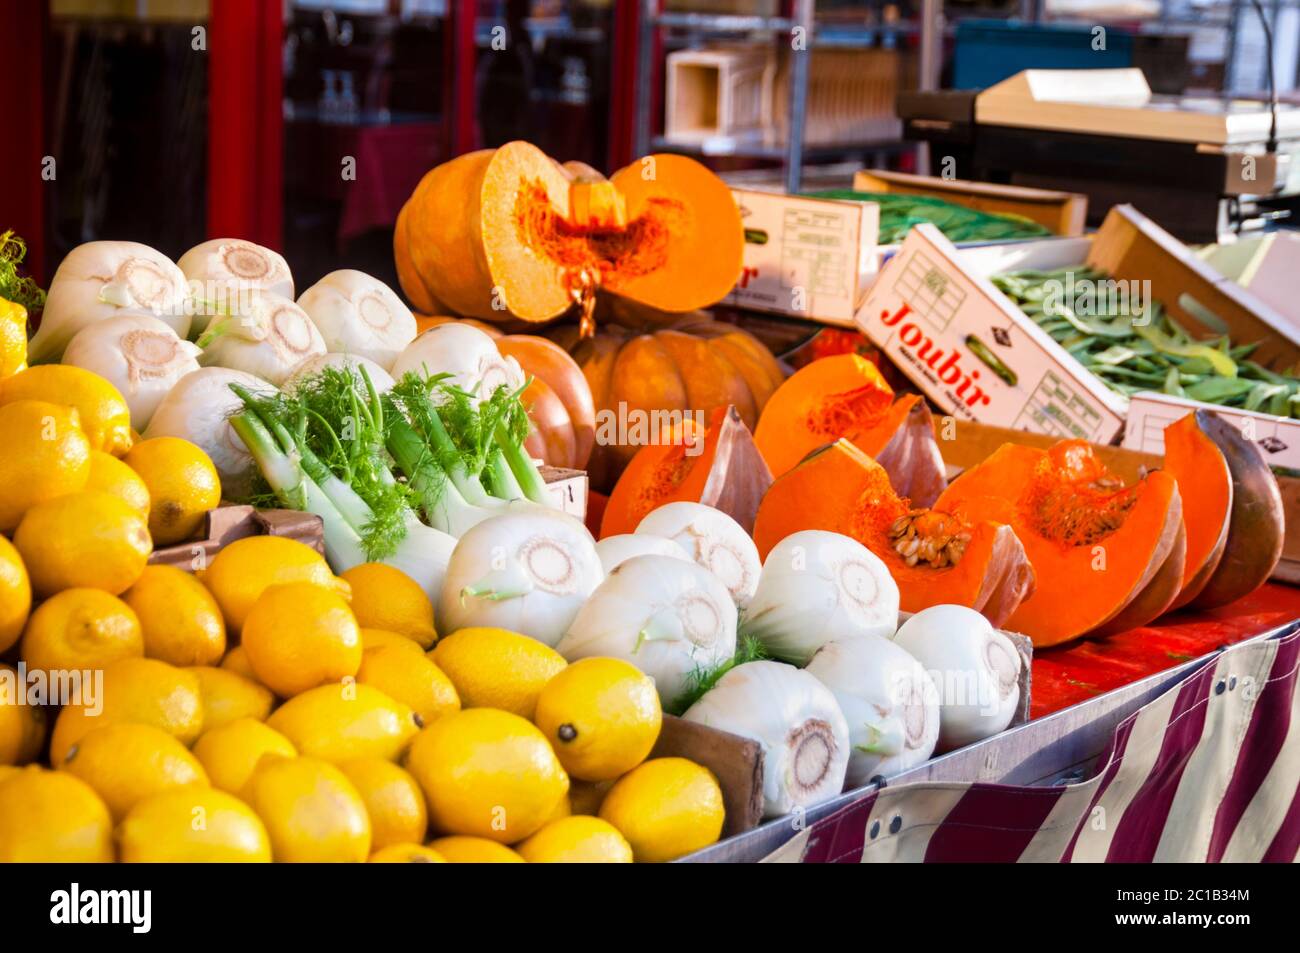 Stand de légumes à Paris proposant des légumes d'automne et d'hiver, France. Banque D'Images